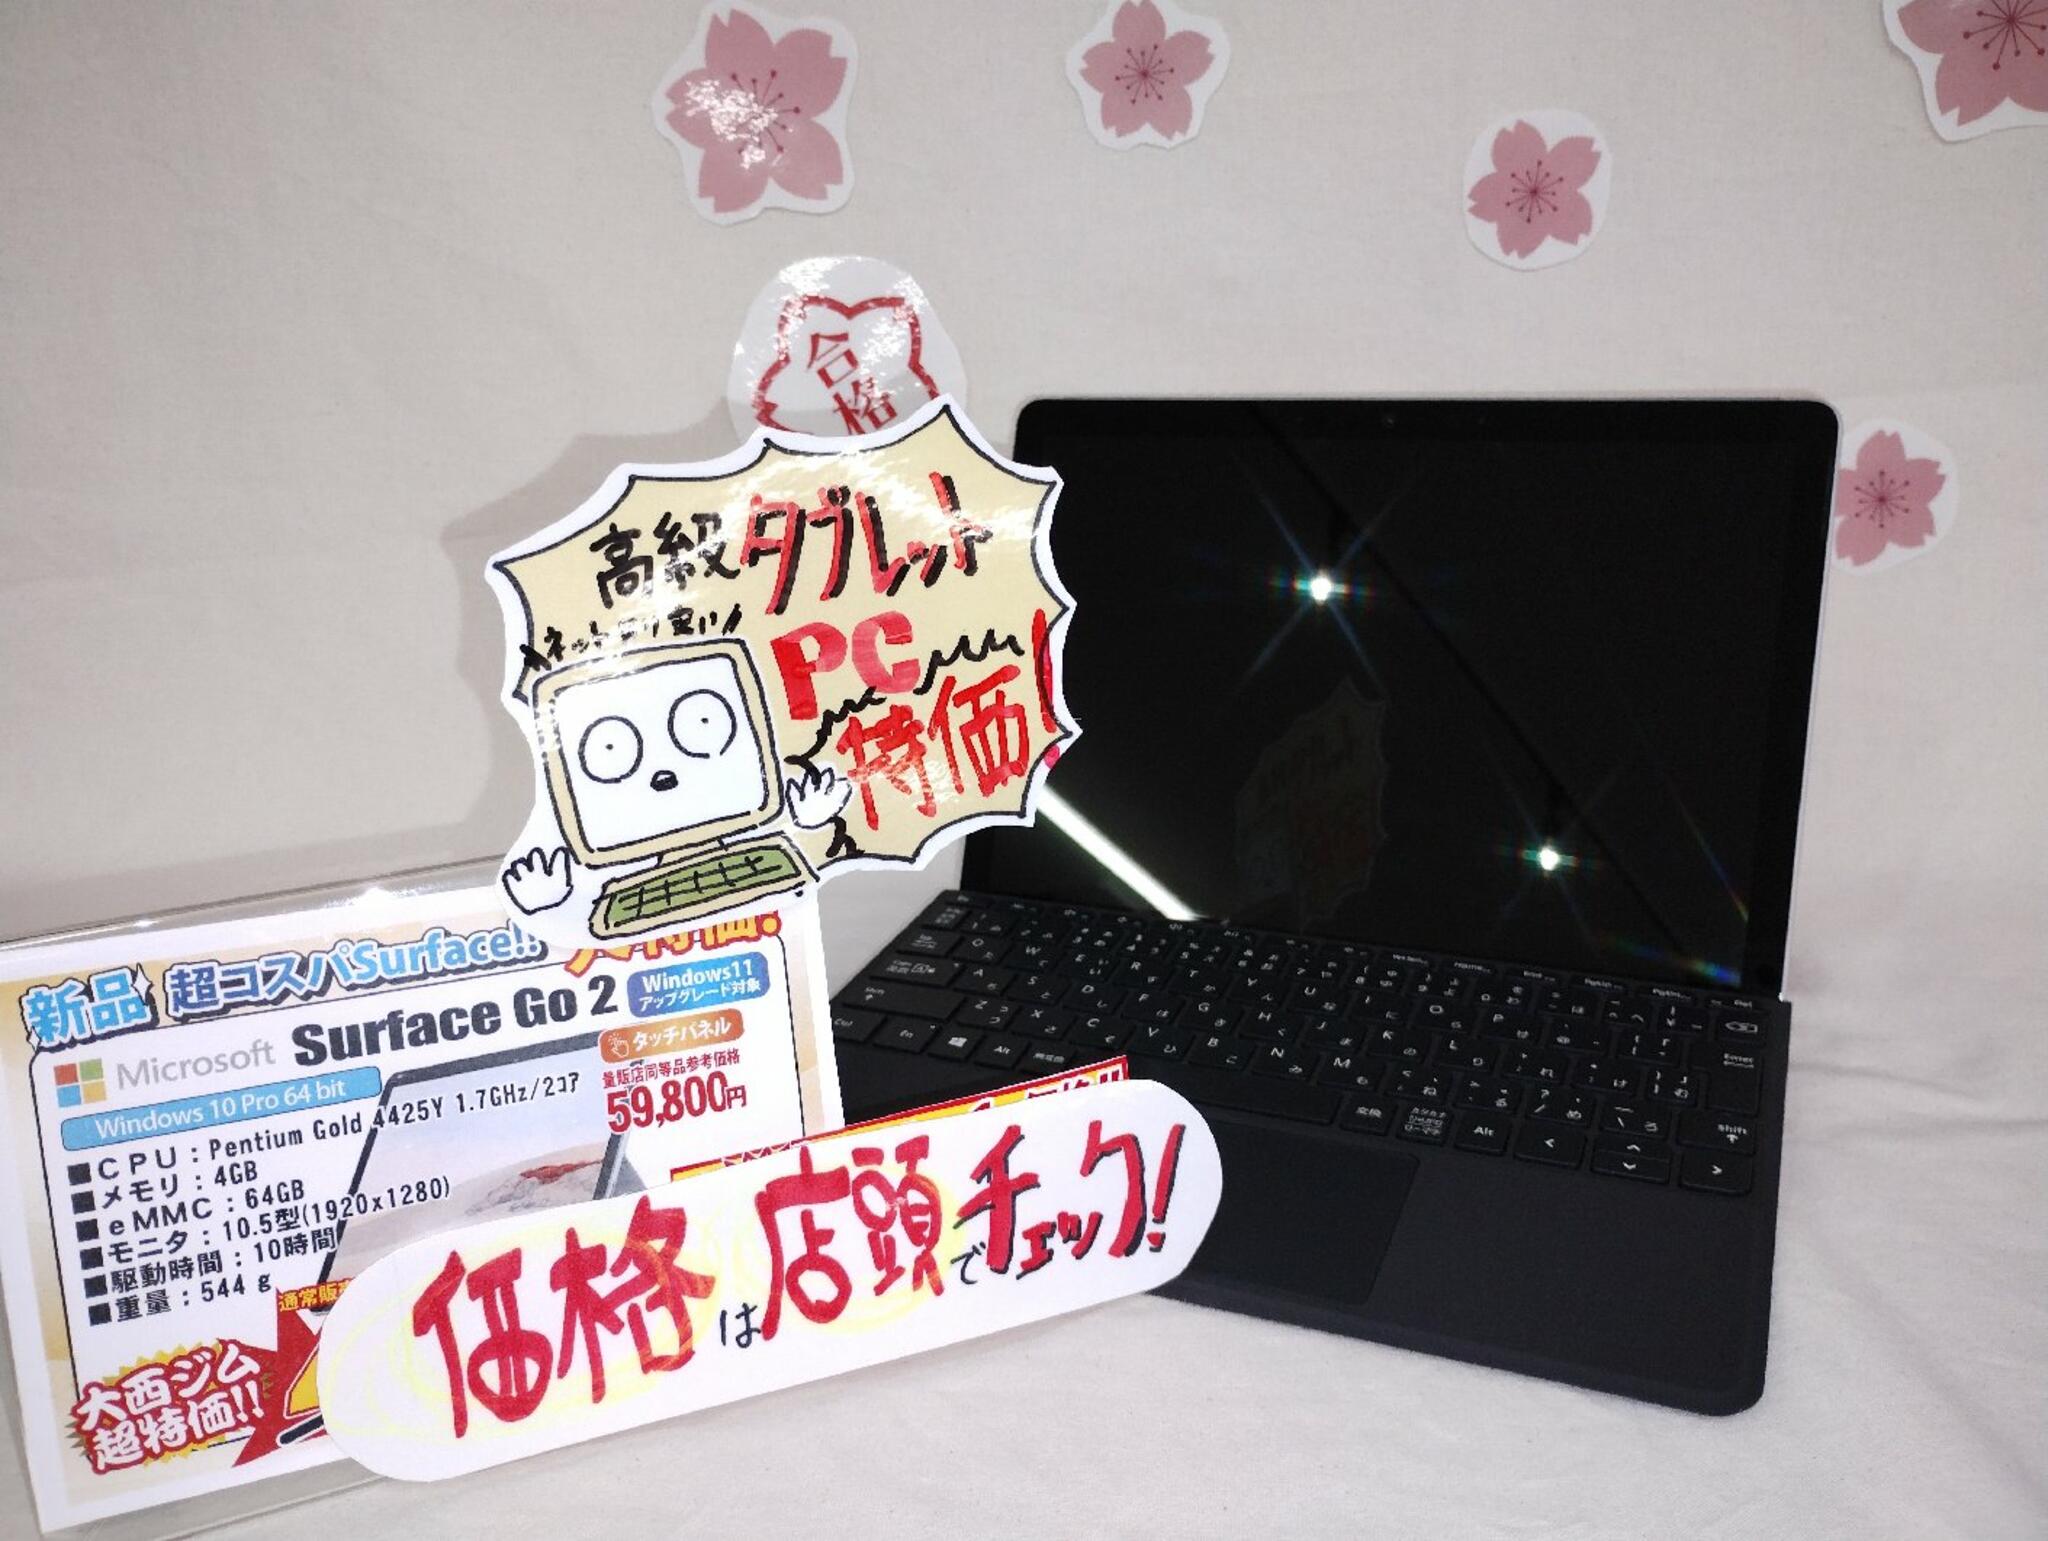 パソコン専門店 大西ジム 新長田店からのお知らせ(当店オススメタブレットノートPC「Surface Go 2」)に関する写真